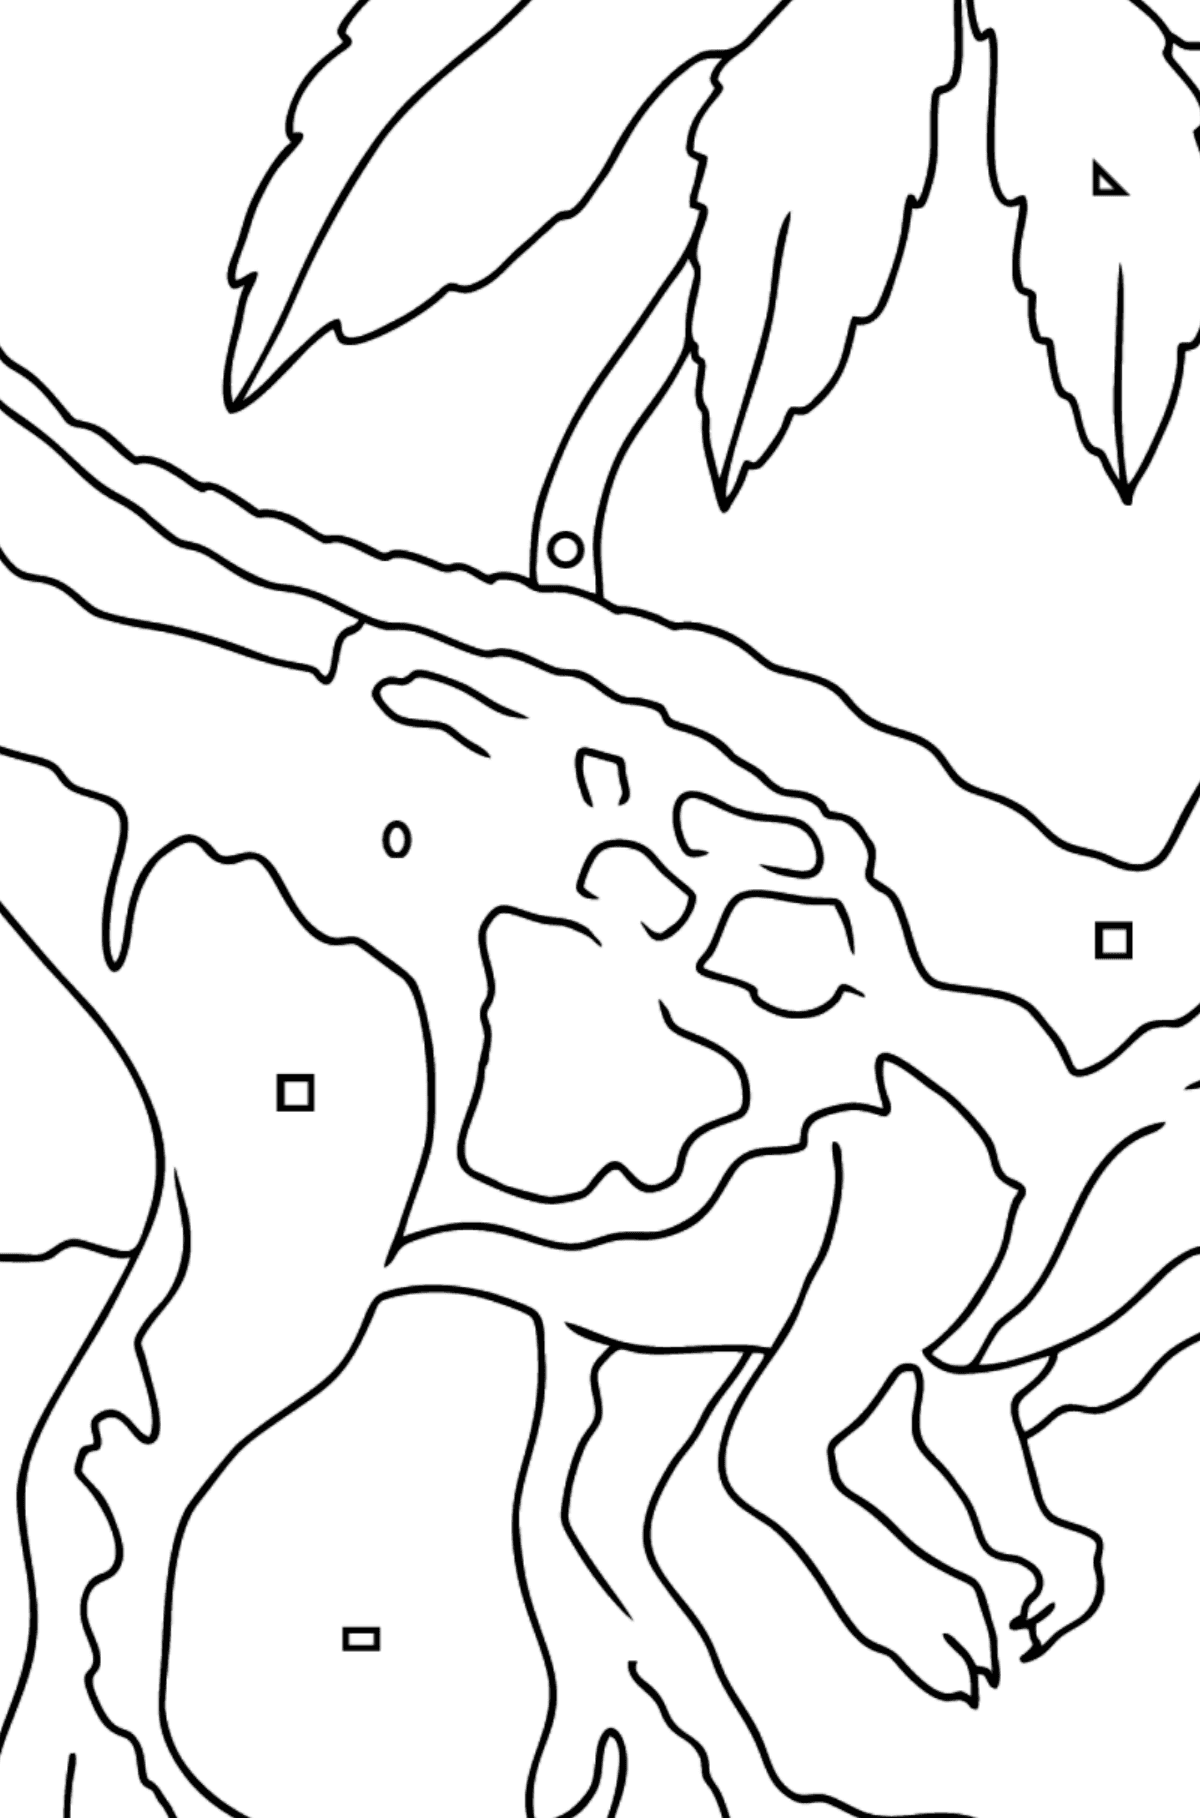 Målarbild tyrannosaurus rovdjur (lätt) - Färgläggning av geometriska former För barn